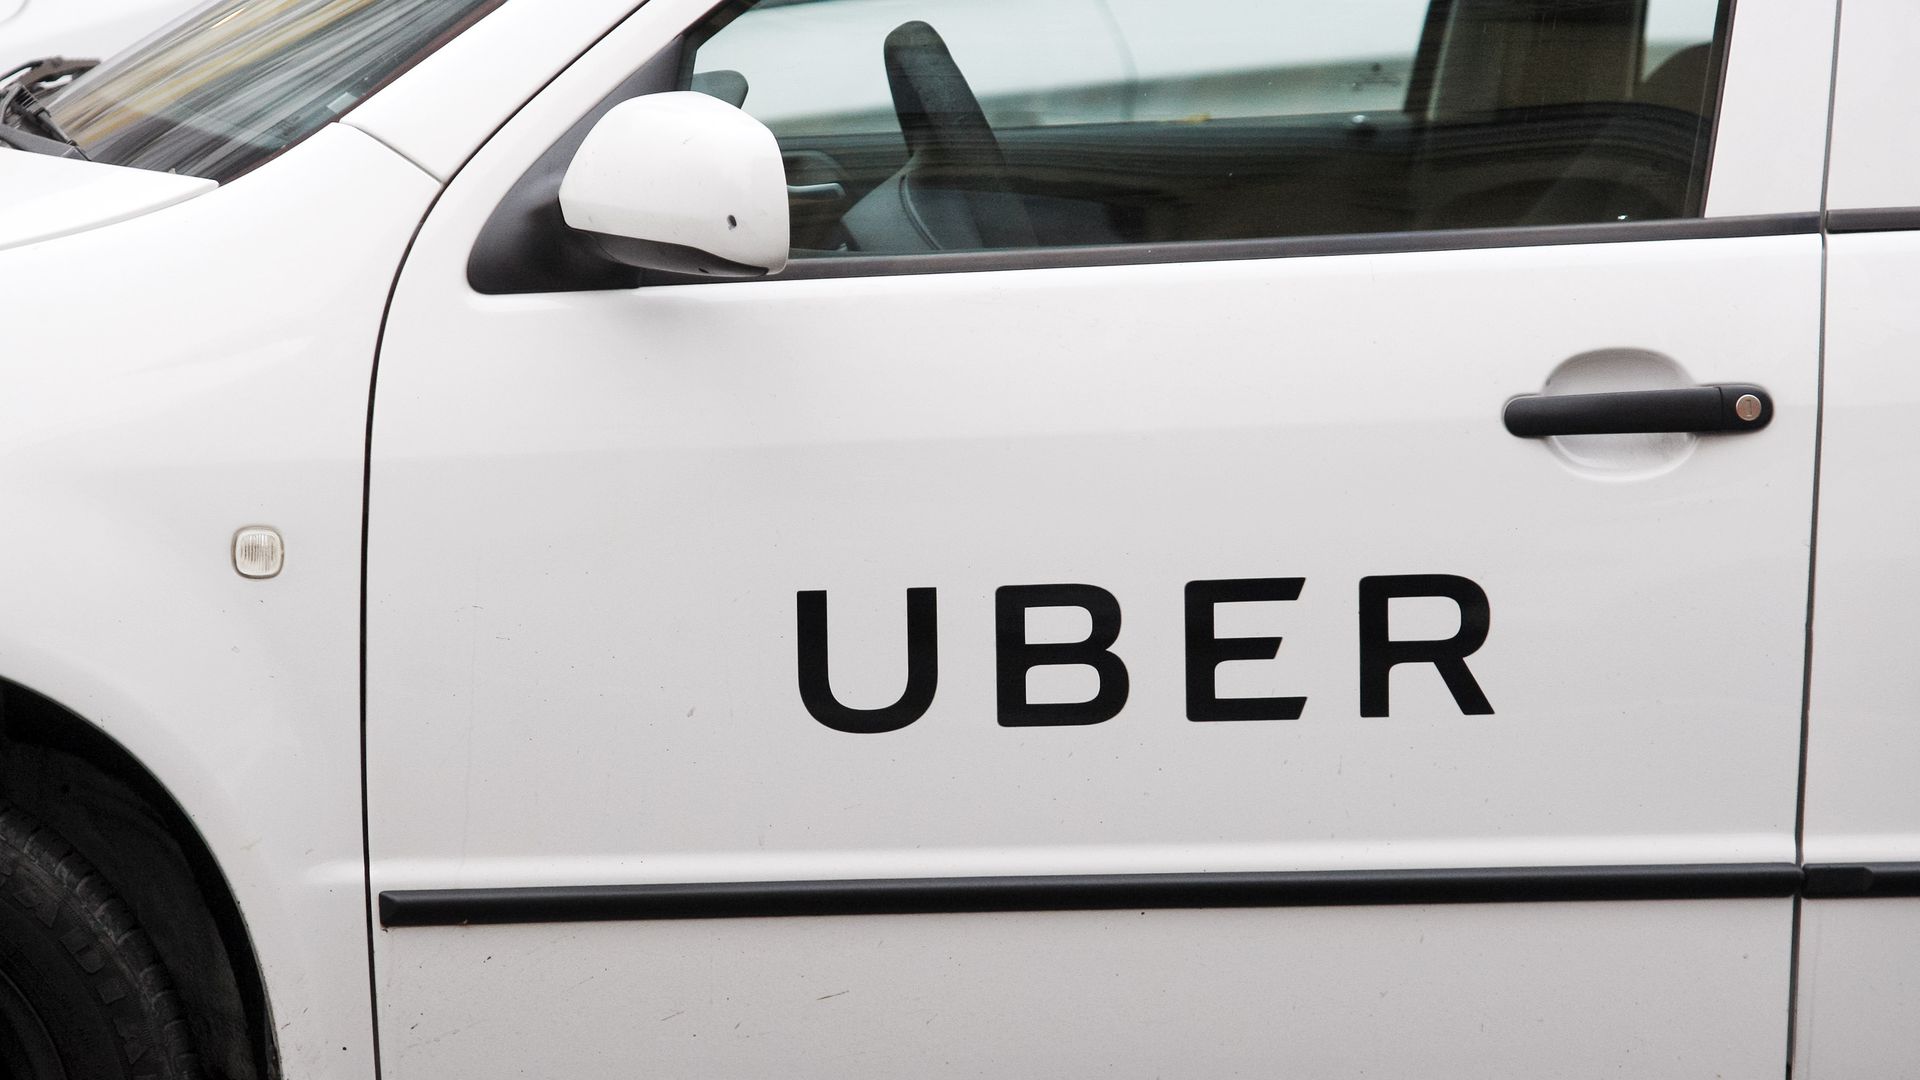 Uber logo on side of white car.